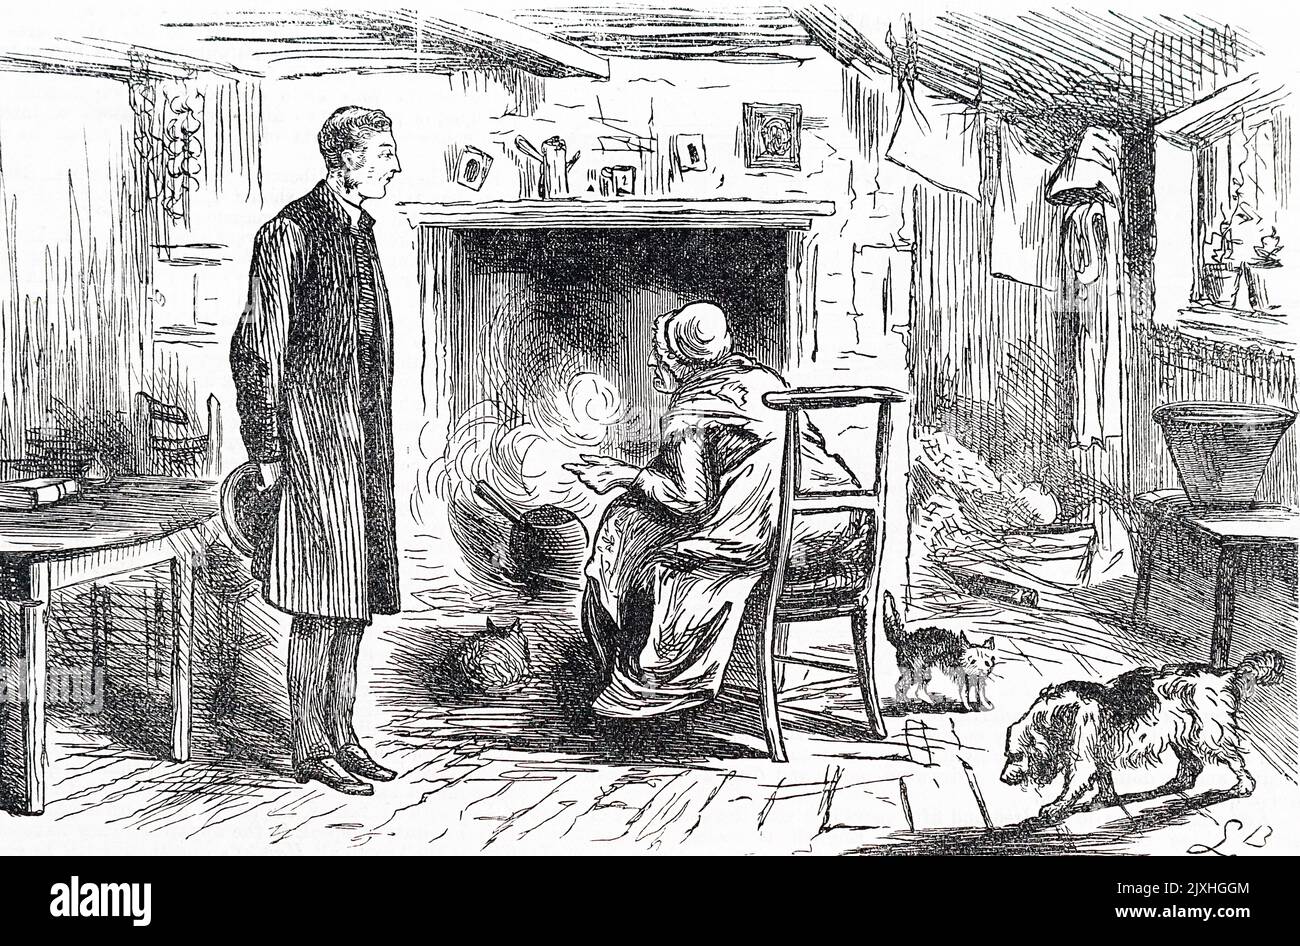 Karikatur, die eine häusliche Szene zeigt, eine ältere Frau, die in einem Topf im Kamin etwas kocht. Datiert aus dem 19.. Jahrhundert Stockfoto